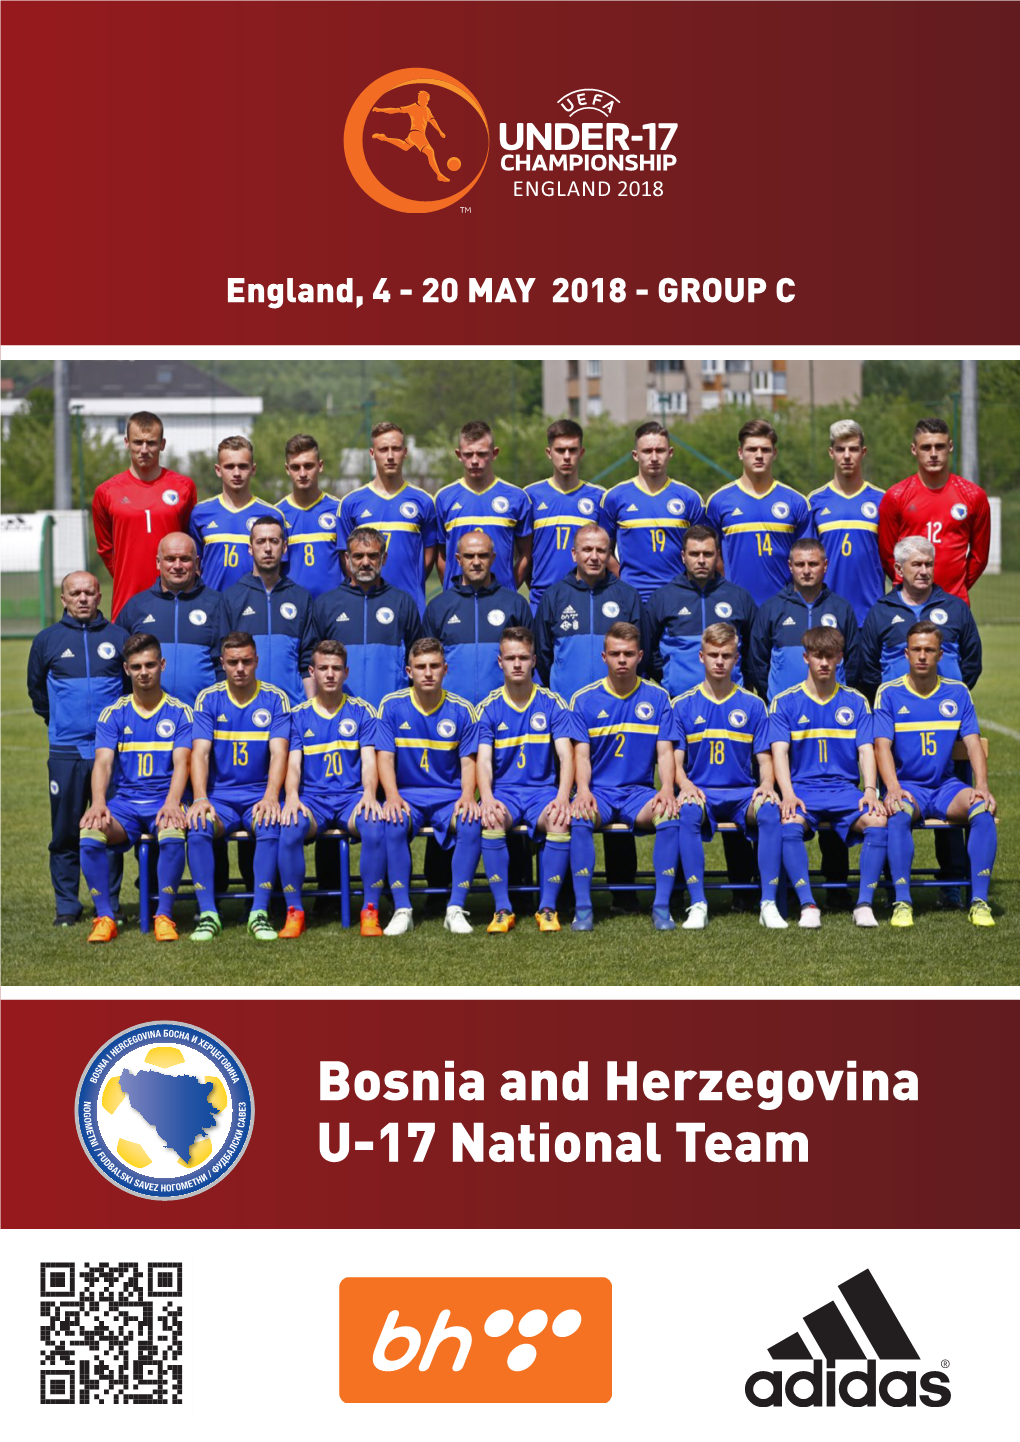 Bosnia and Herzegovina U-17 National Team 2 Bosnia and Herzegovina - Basic Information